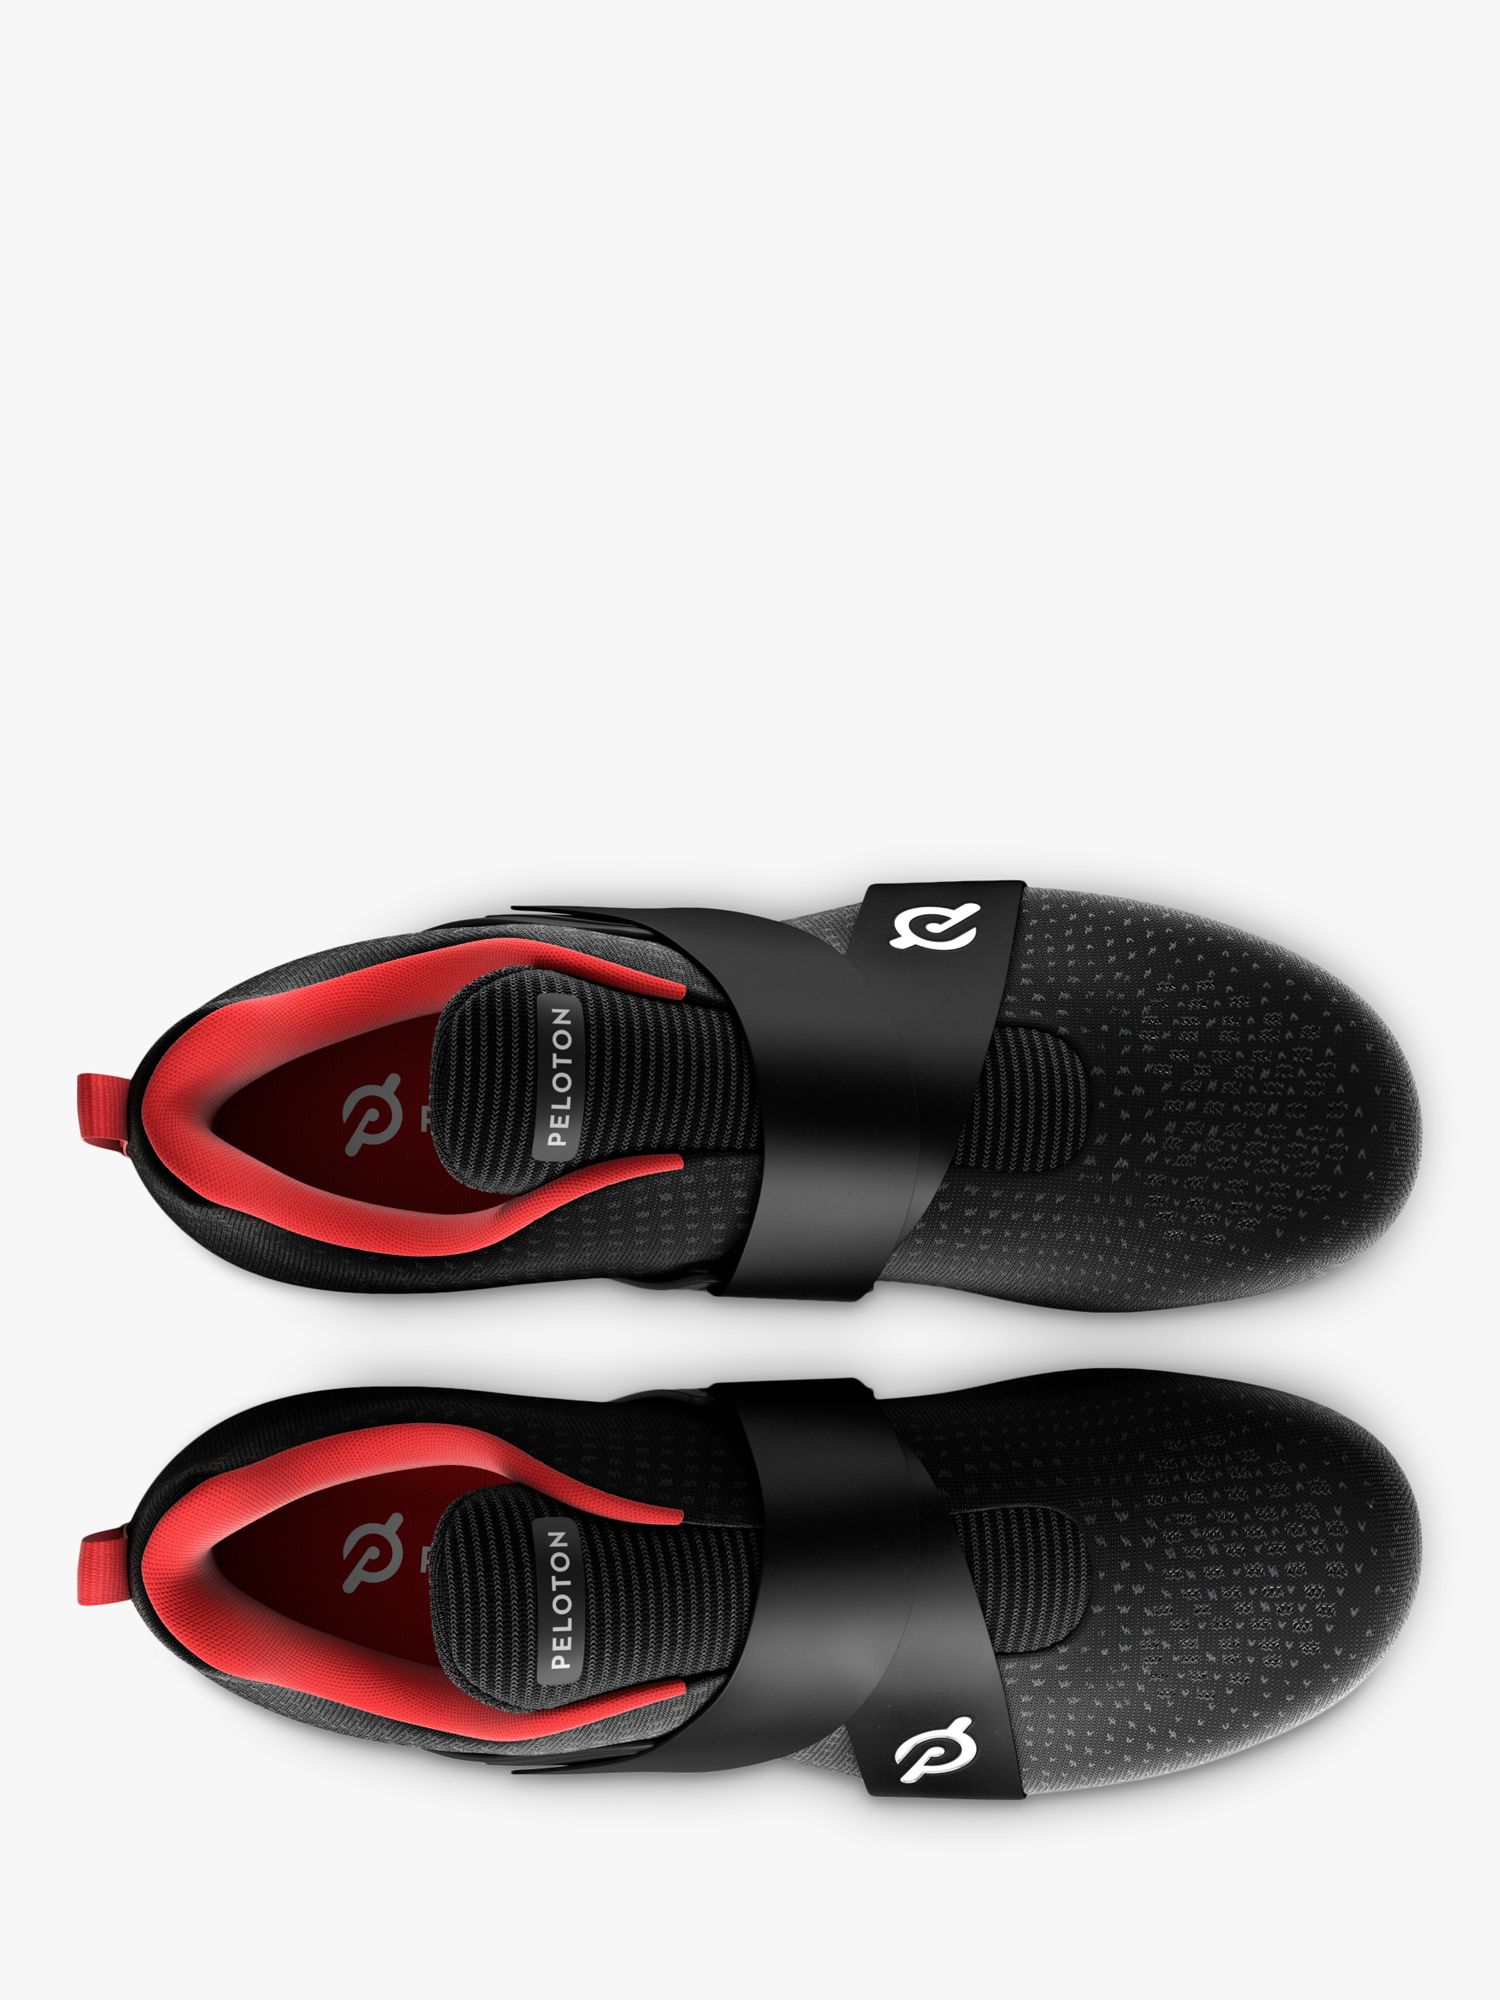 Peloton Altos Cycling Shoes, Black/Red, 6.5